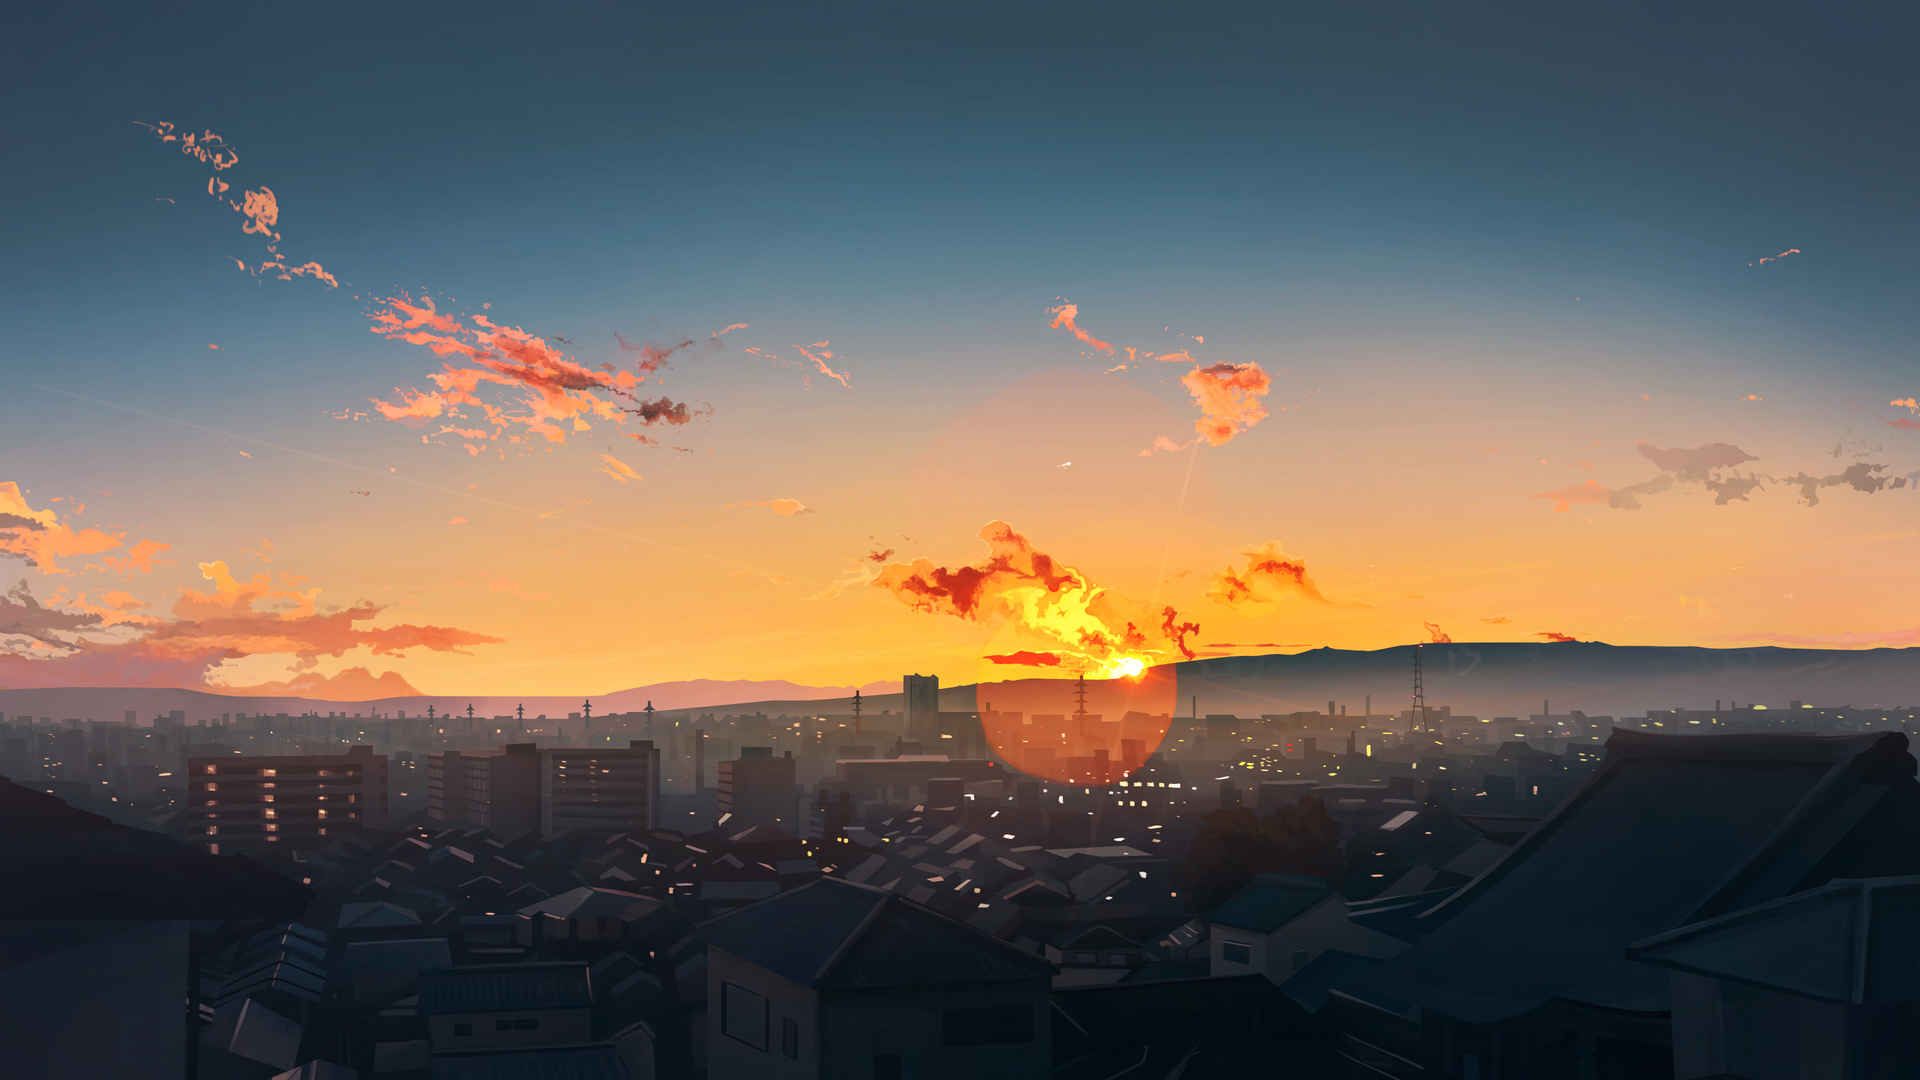 天空 夕阳 插画风景4k动漫壁纸3840x2160-